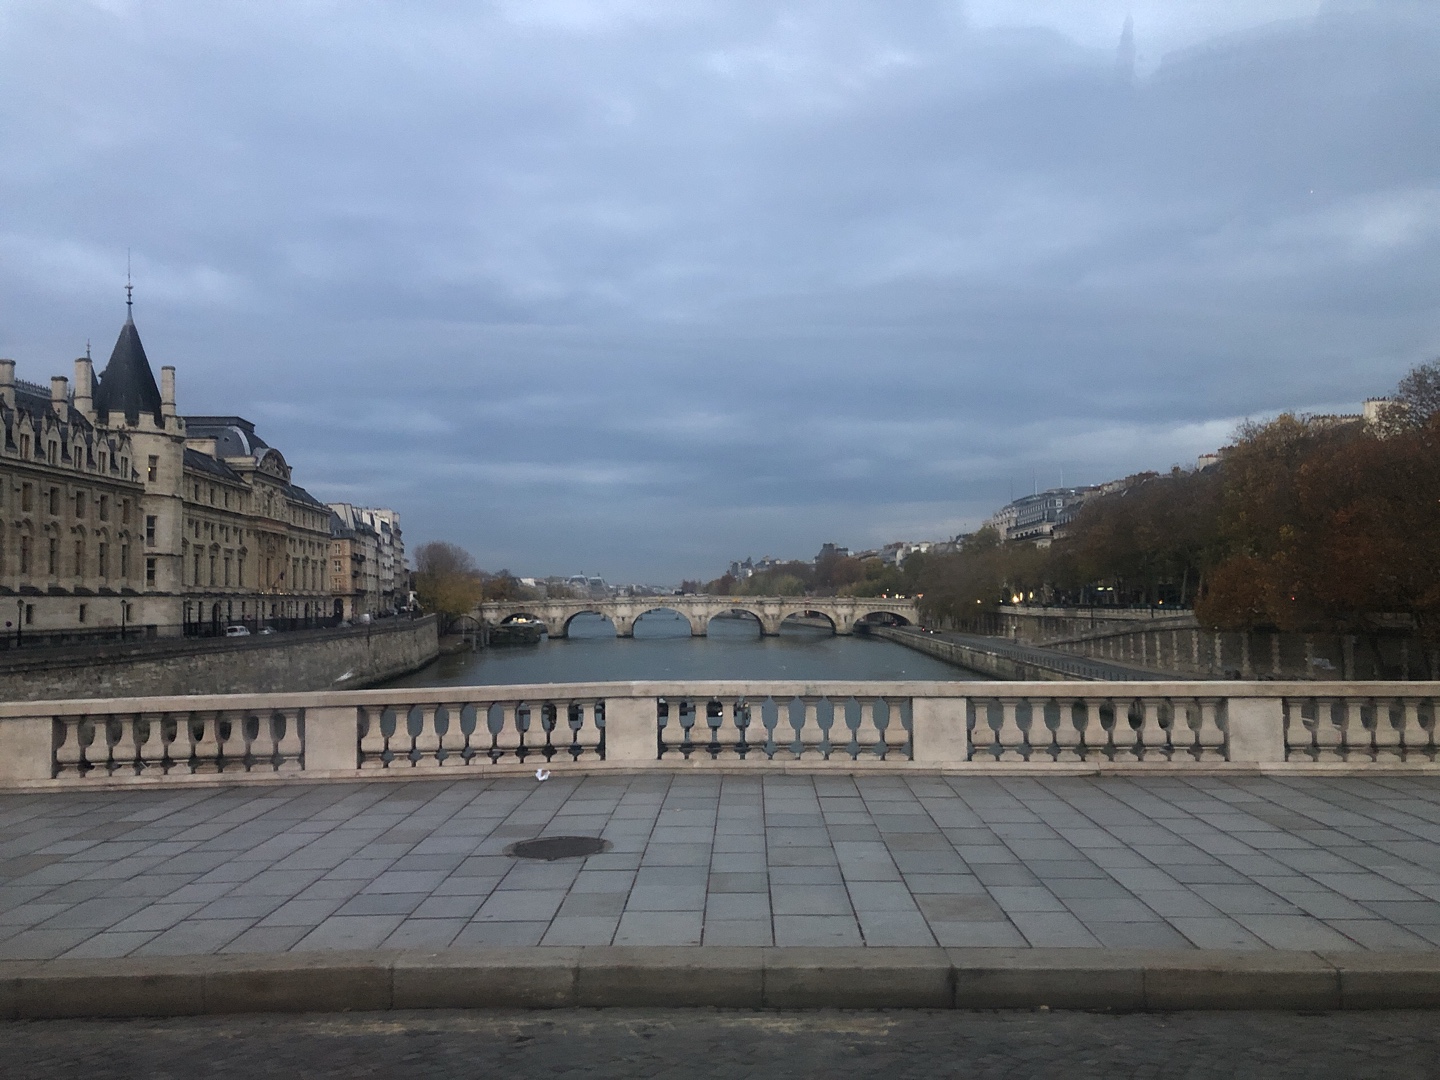 2019년 연말 출장가서 찍은 사진. 아름답고 우울하고 좋으면서 싫기도 한 파리는 언제나 애증의 도시